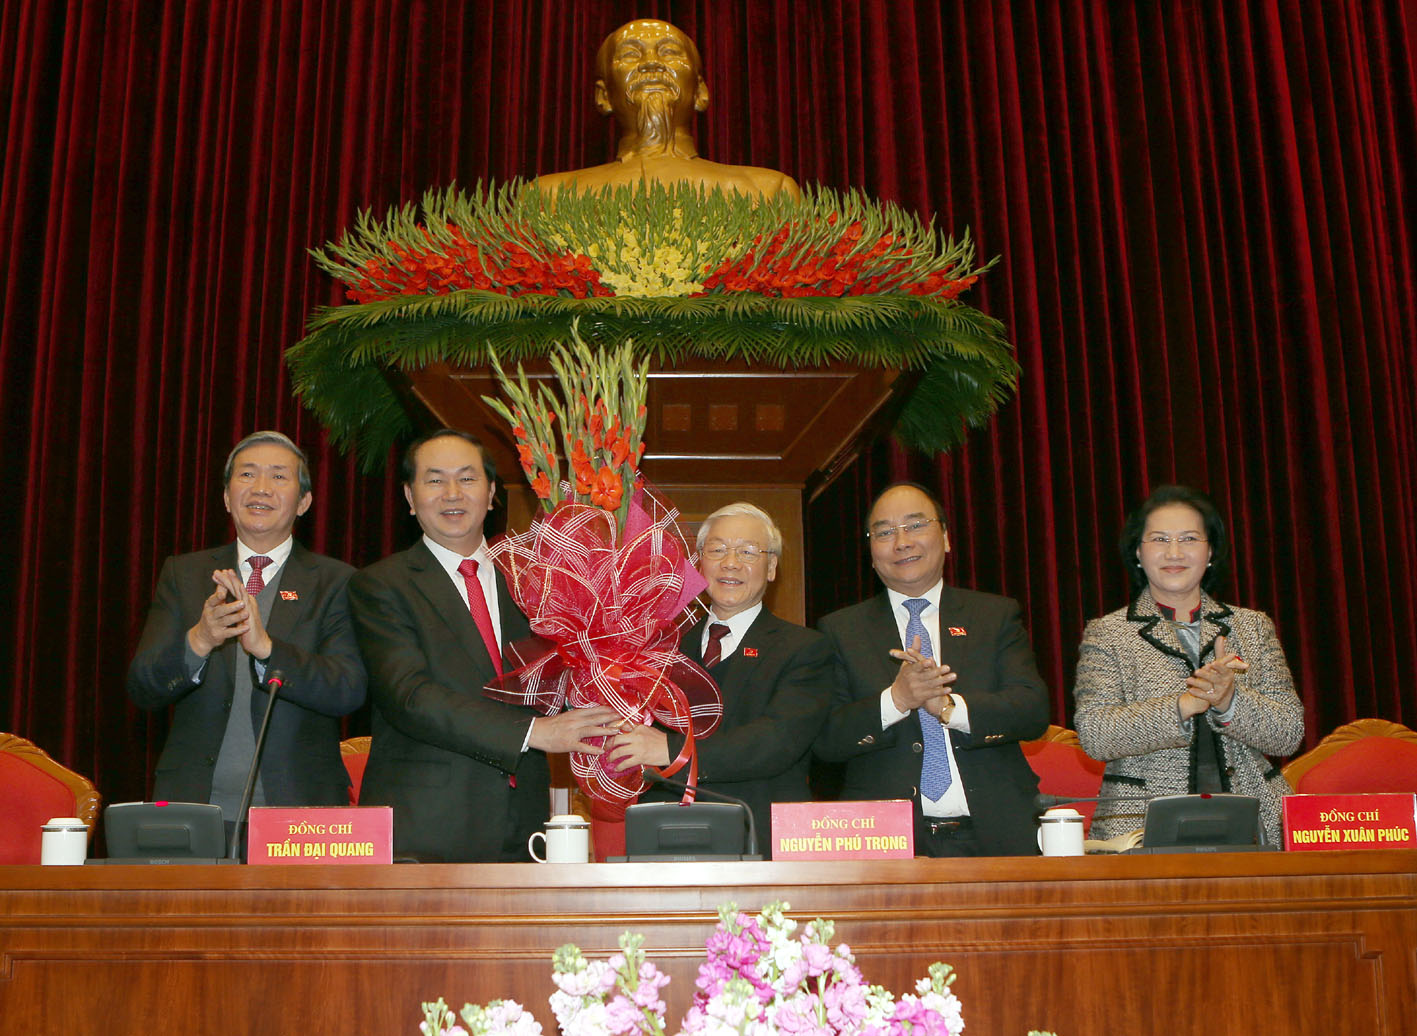 Tặng hoa chúc mừng ông Nguyễn Phú Trọng được bầu làm Tổng Bí thư Ban chấp hành Trung ương khóa XII